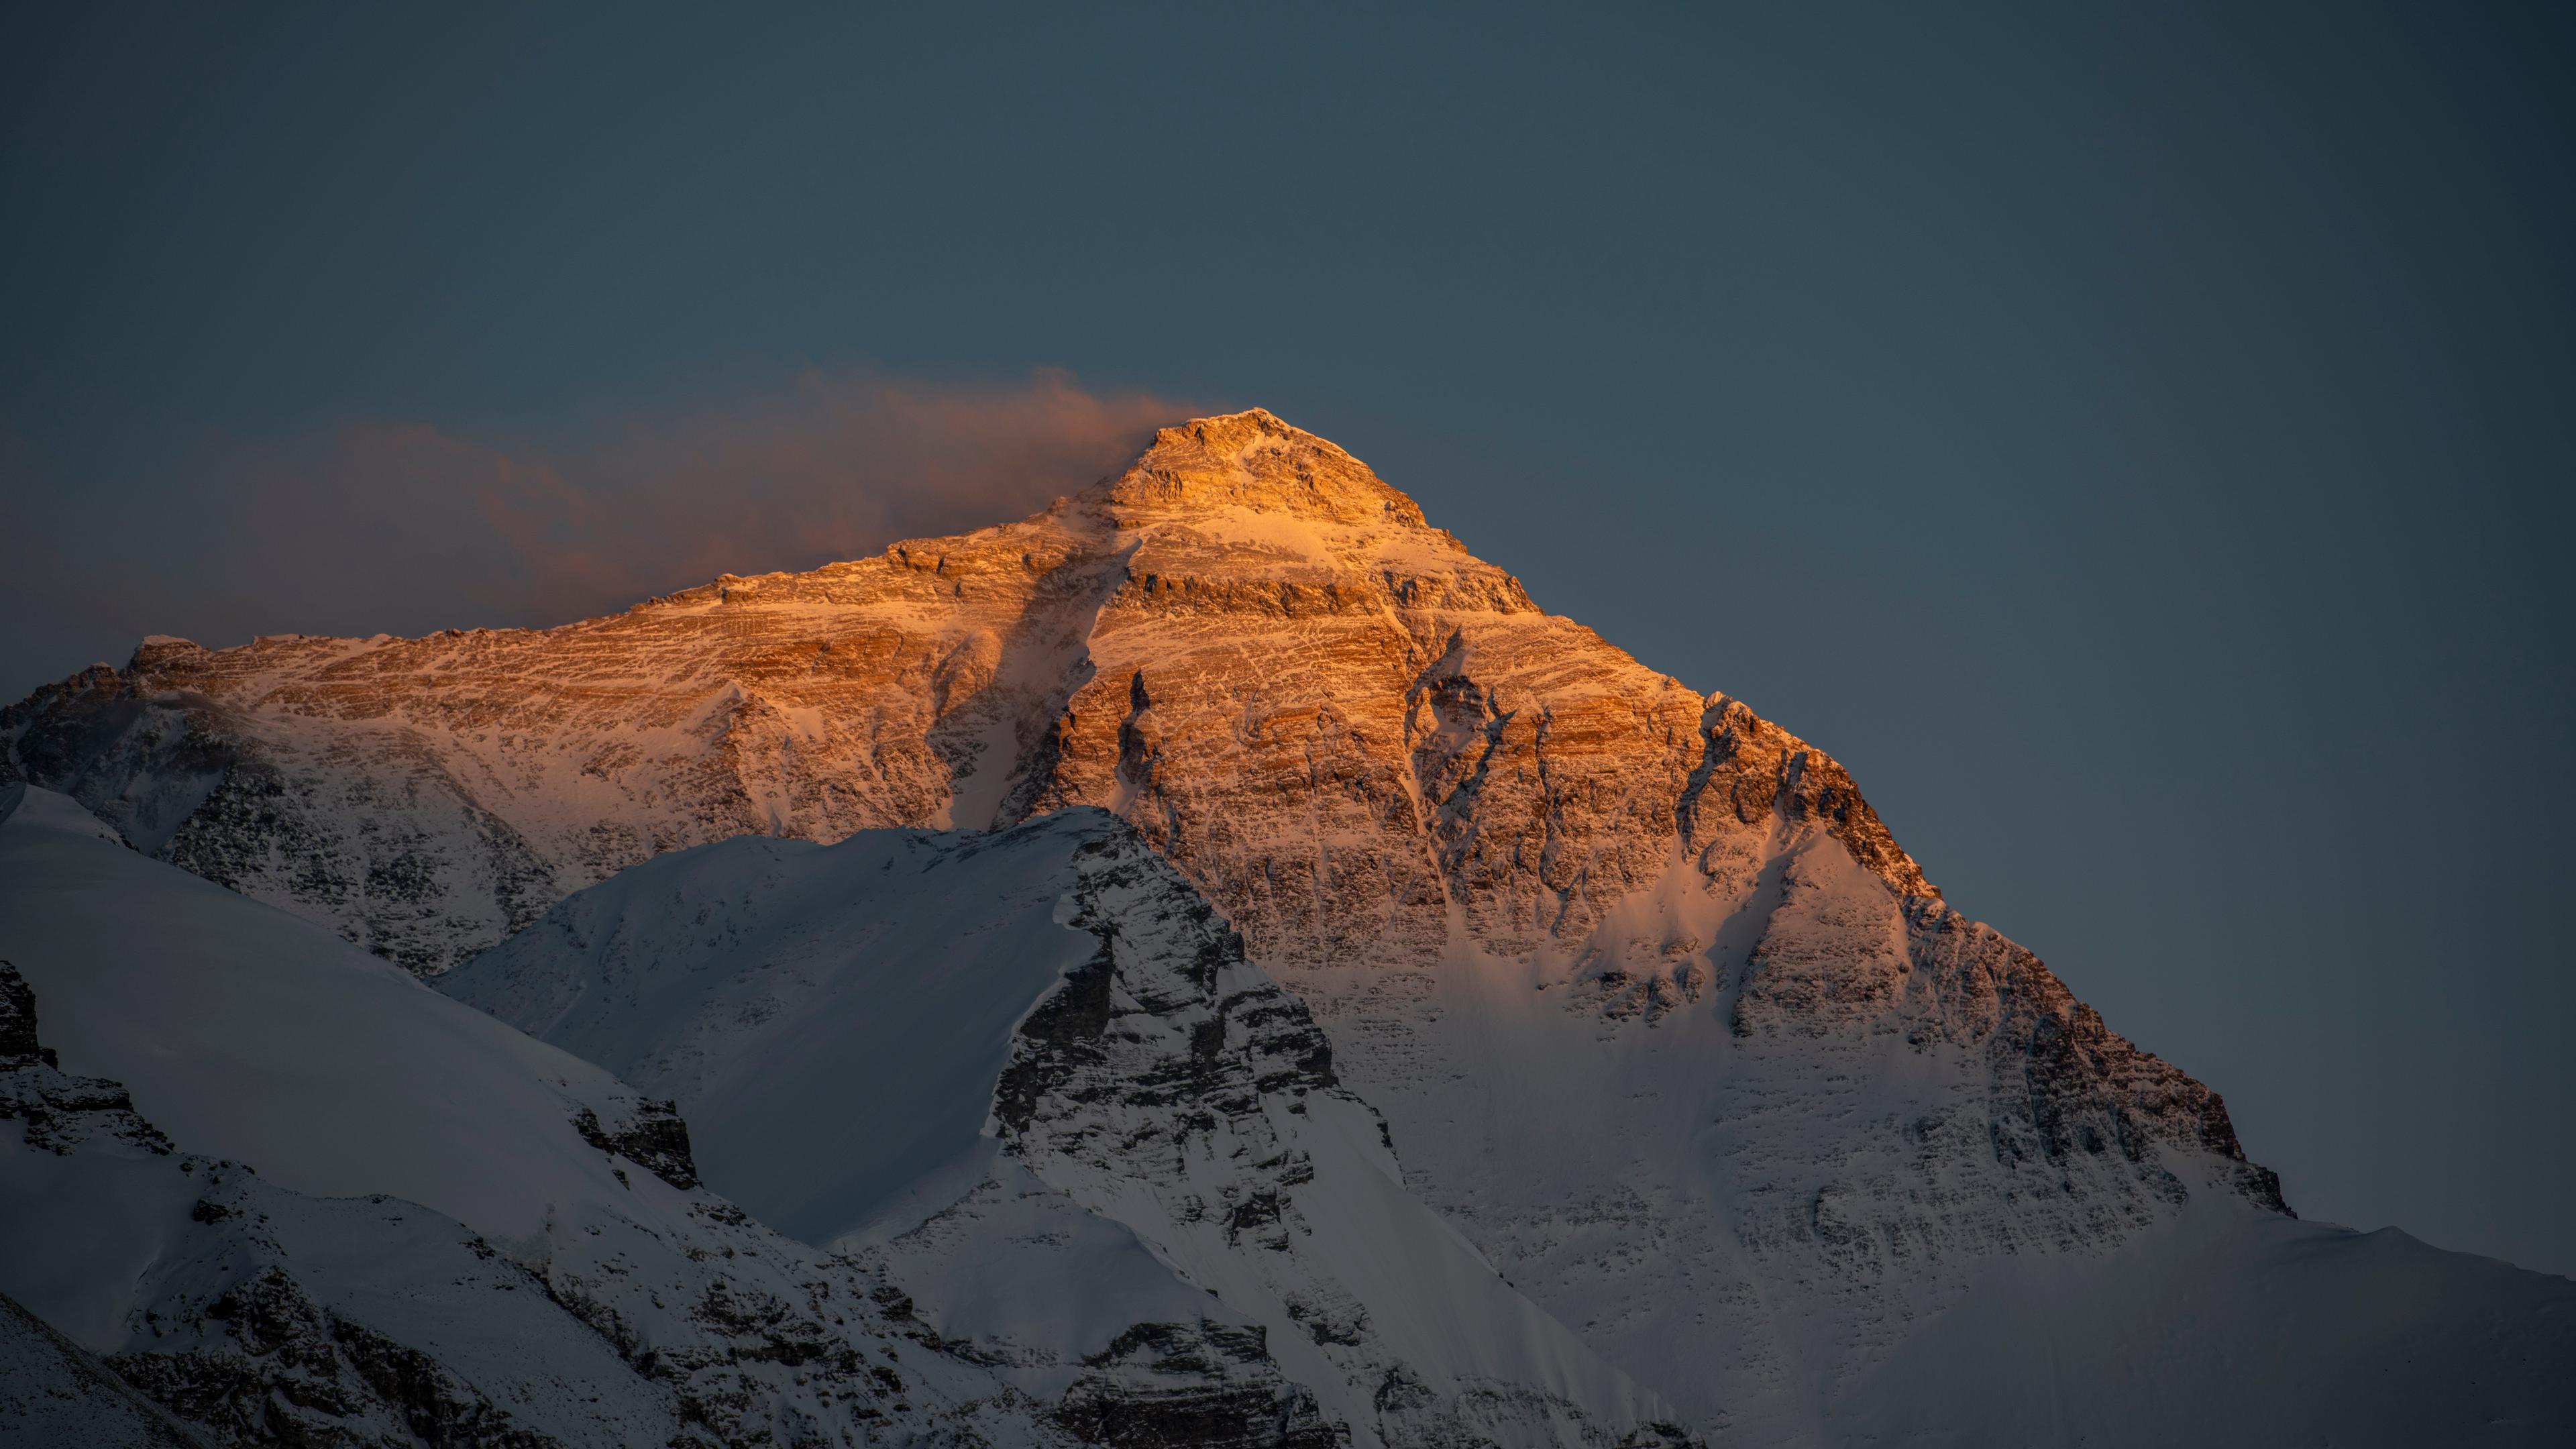 Wegen des Klimawandels schmelzen die Gletscher im Himalaya schneller als je zuvor, so ein Bericht des Internationalen Zentrums für Integrierte Entwicklung von Bergregionen. 